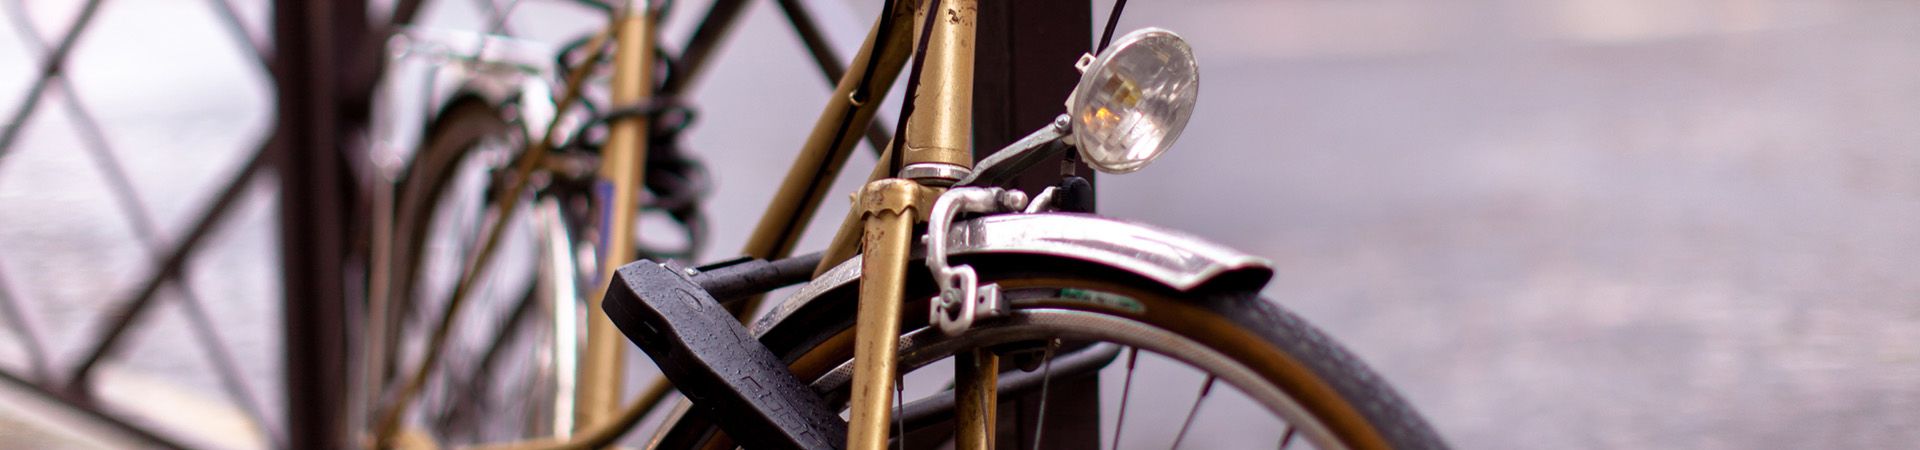 Dispositivos de seguridad para bicicletas: los candados seguros protegen ante posibles robos.